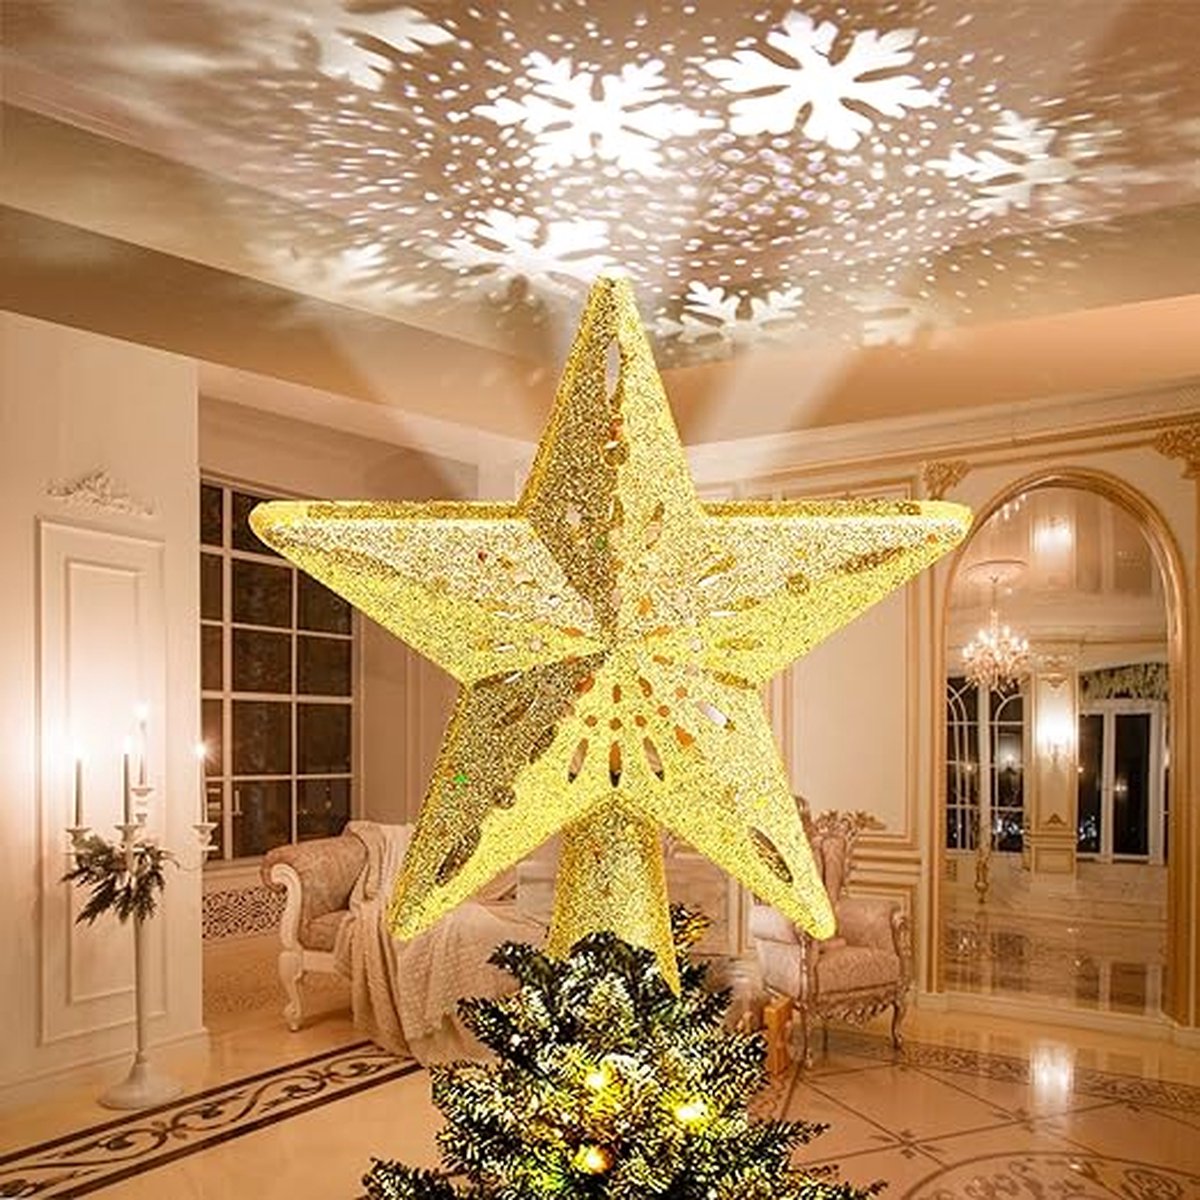 Kerstboomster, kerstboomtopperprojector Poinsettia, kerstversiering voor kerstboom en interieurdecoratie (goud)